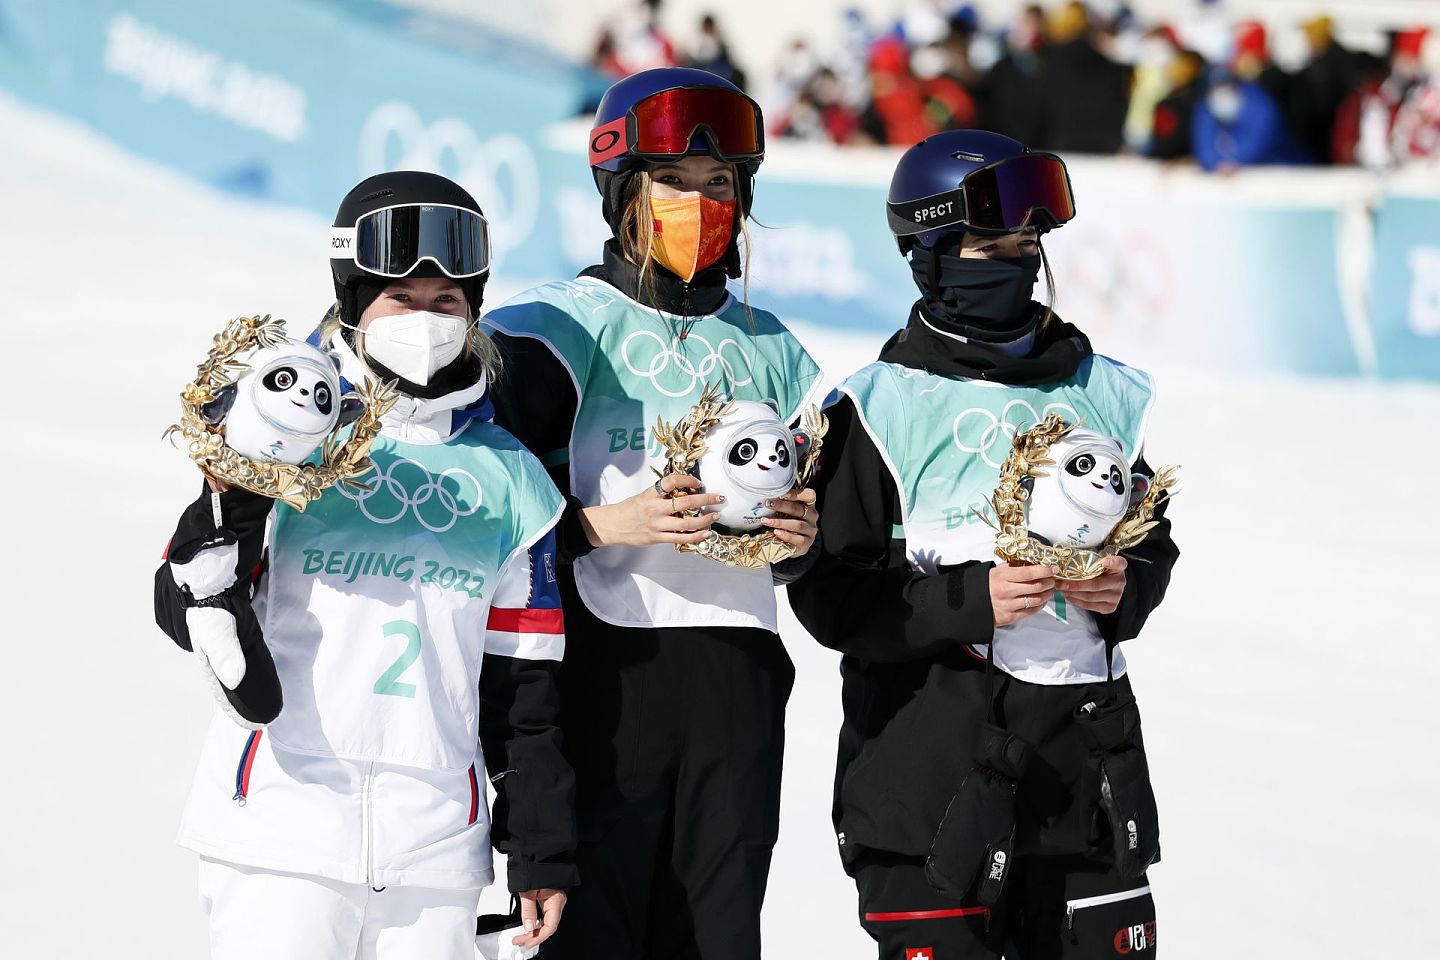 谷爱凌刚为中国赢得自由式滑雪女子大跳台金牌。(Getty)